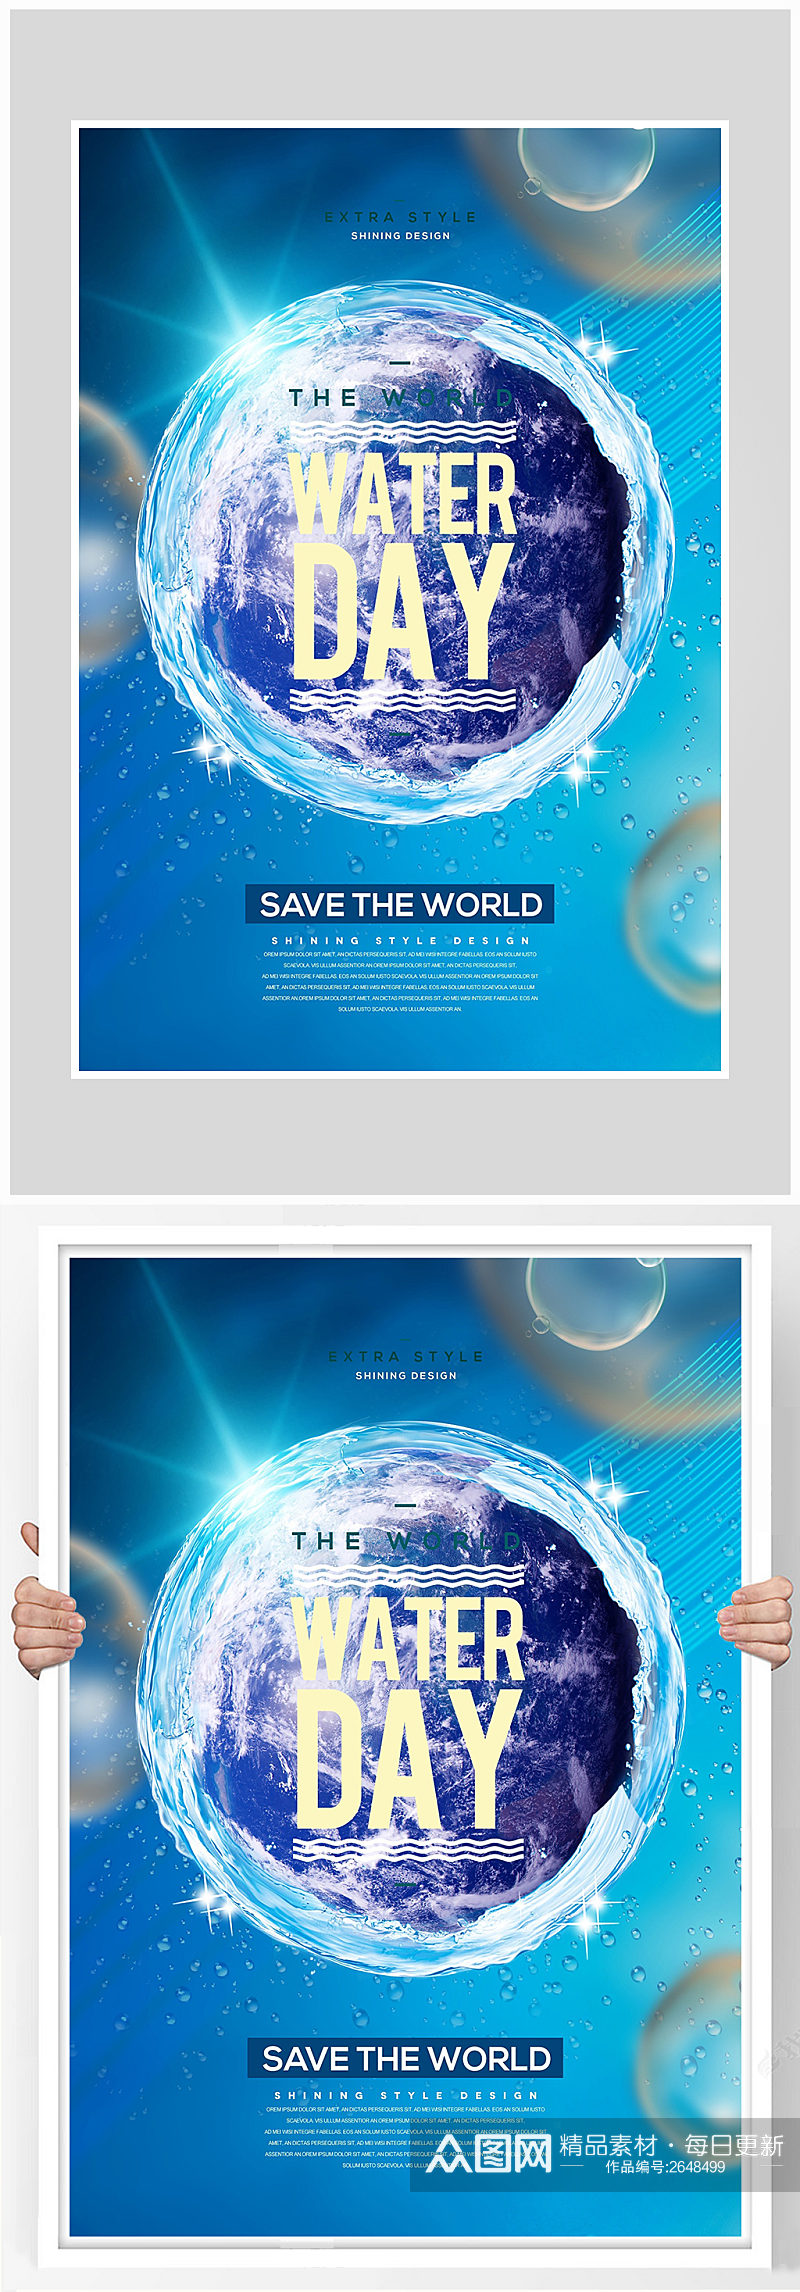 创意保护环境真爱水资源海报设计素材